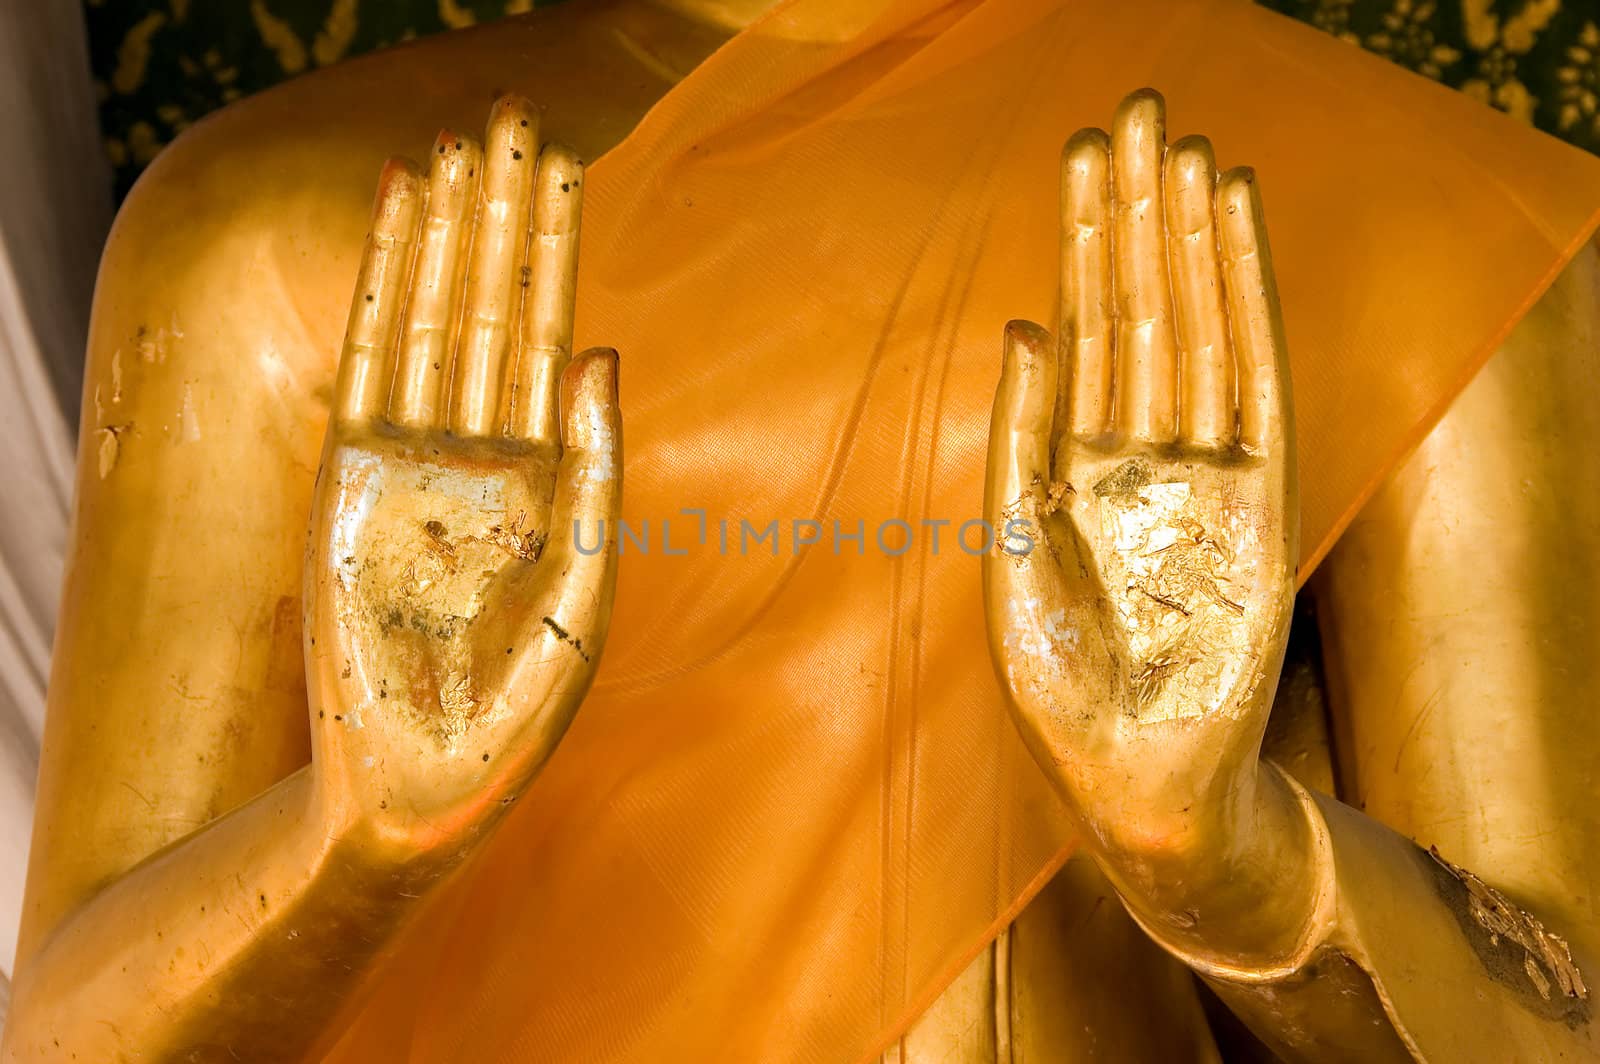 buddha statue by jsompinm